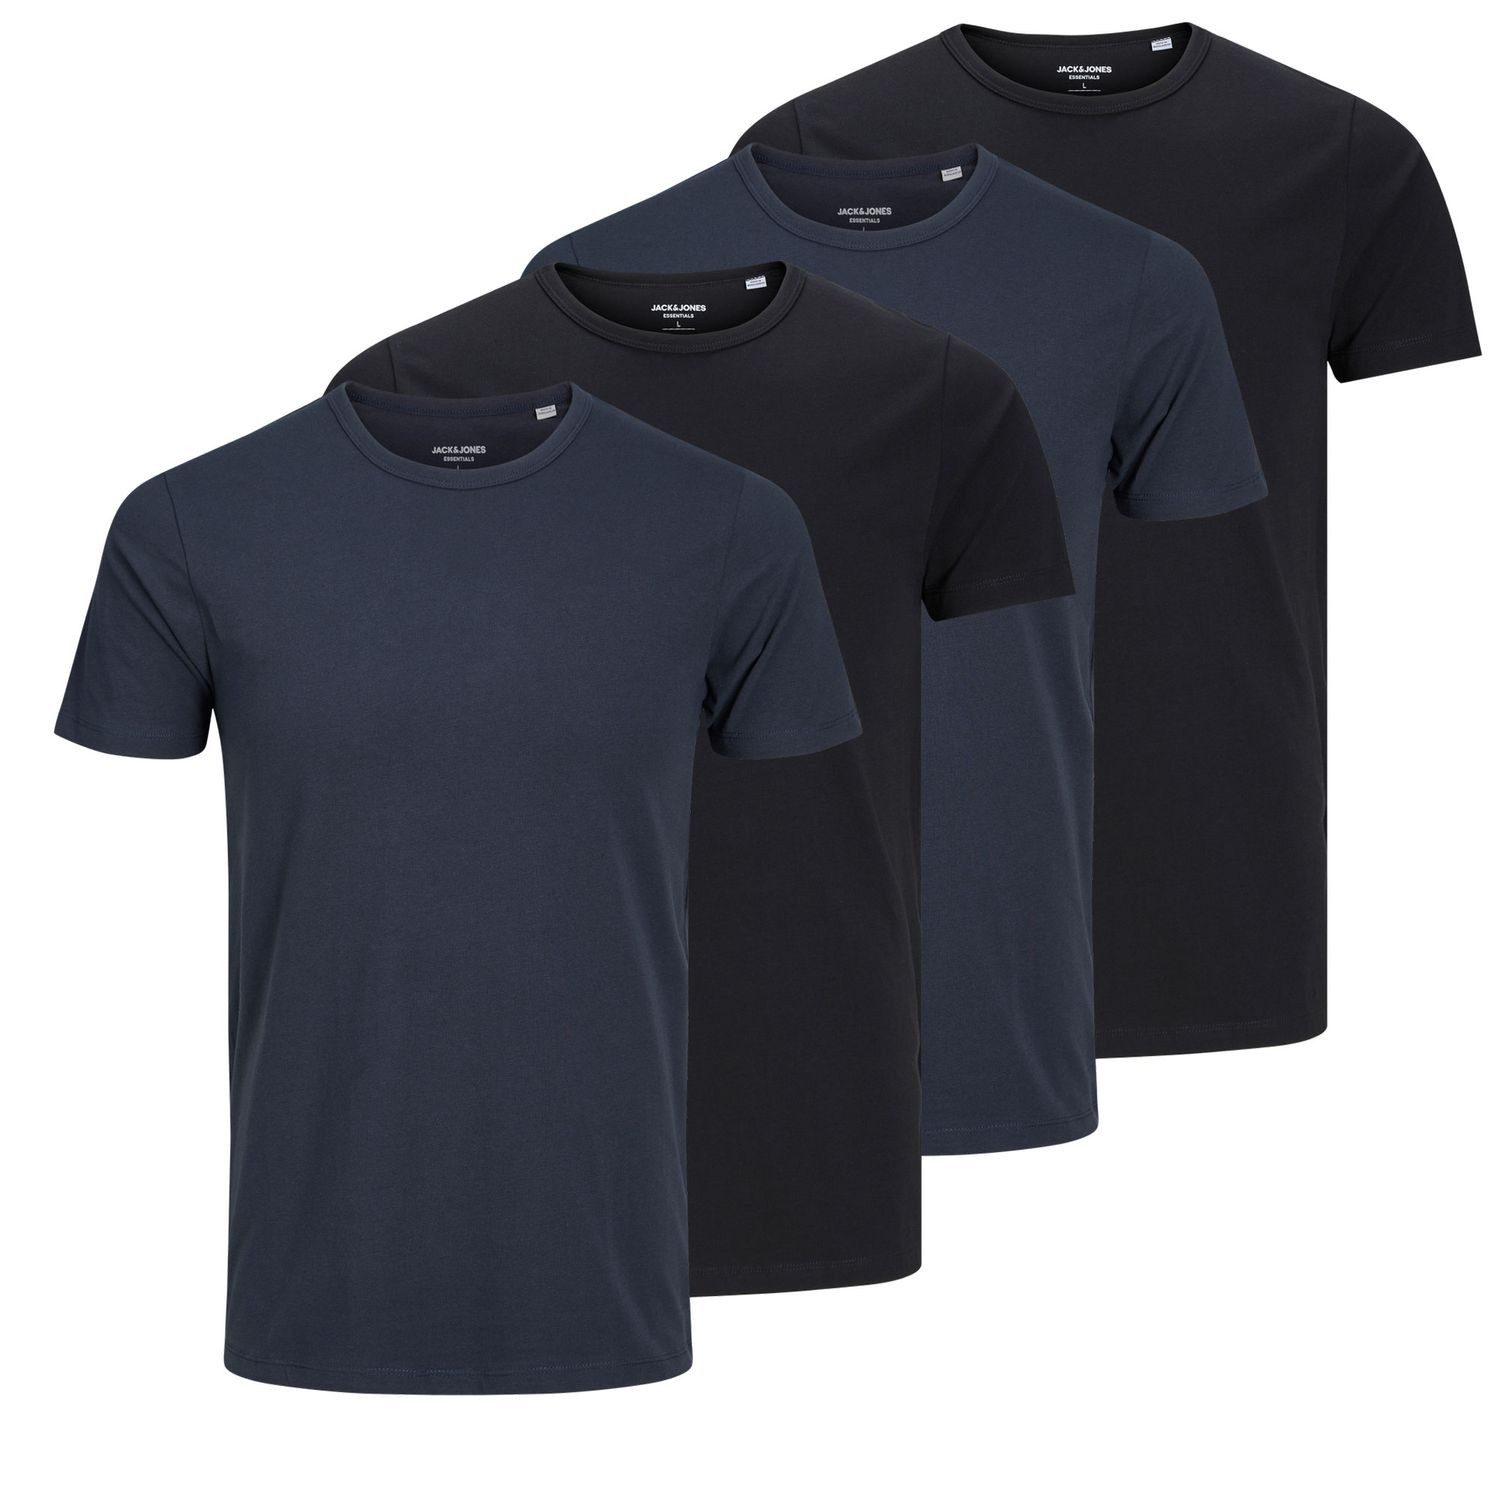 Jack & Jones T-Shirt BASIC für jeden Tag im schlichten Design im 4er Pack